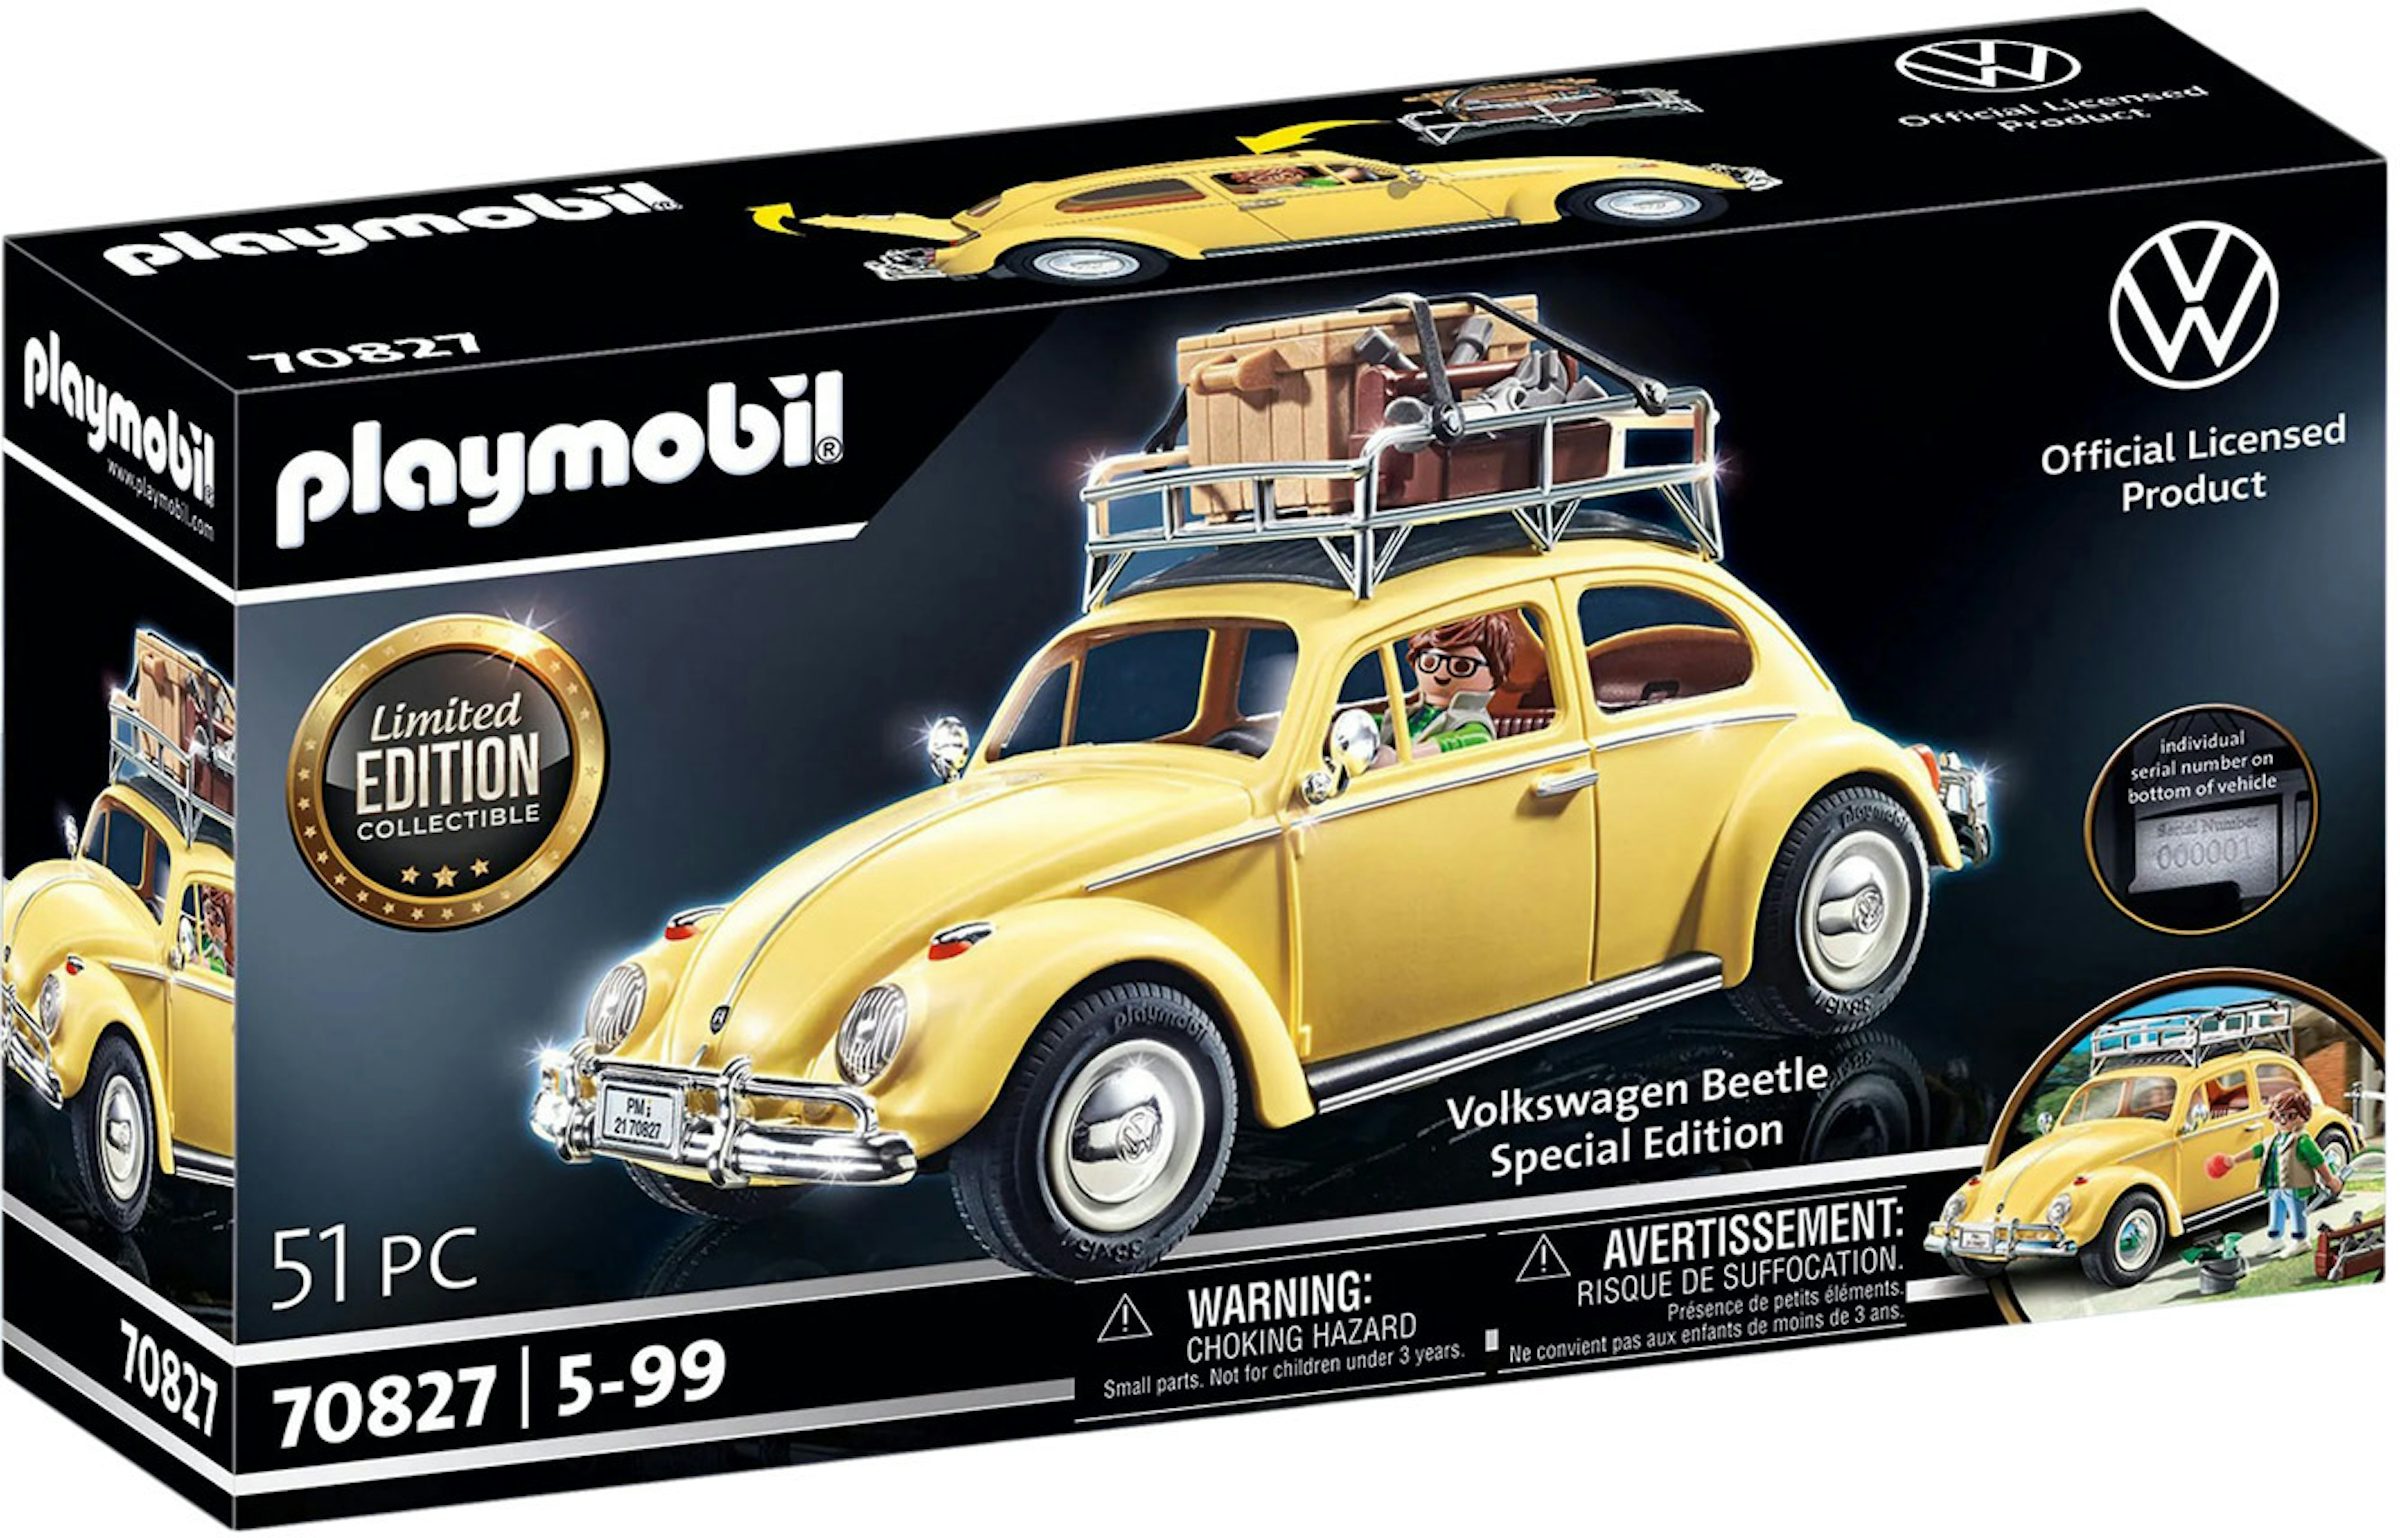 Playmobil Volkswagen Beetle Set 70827 - US